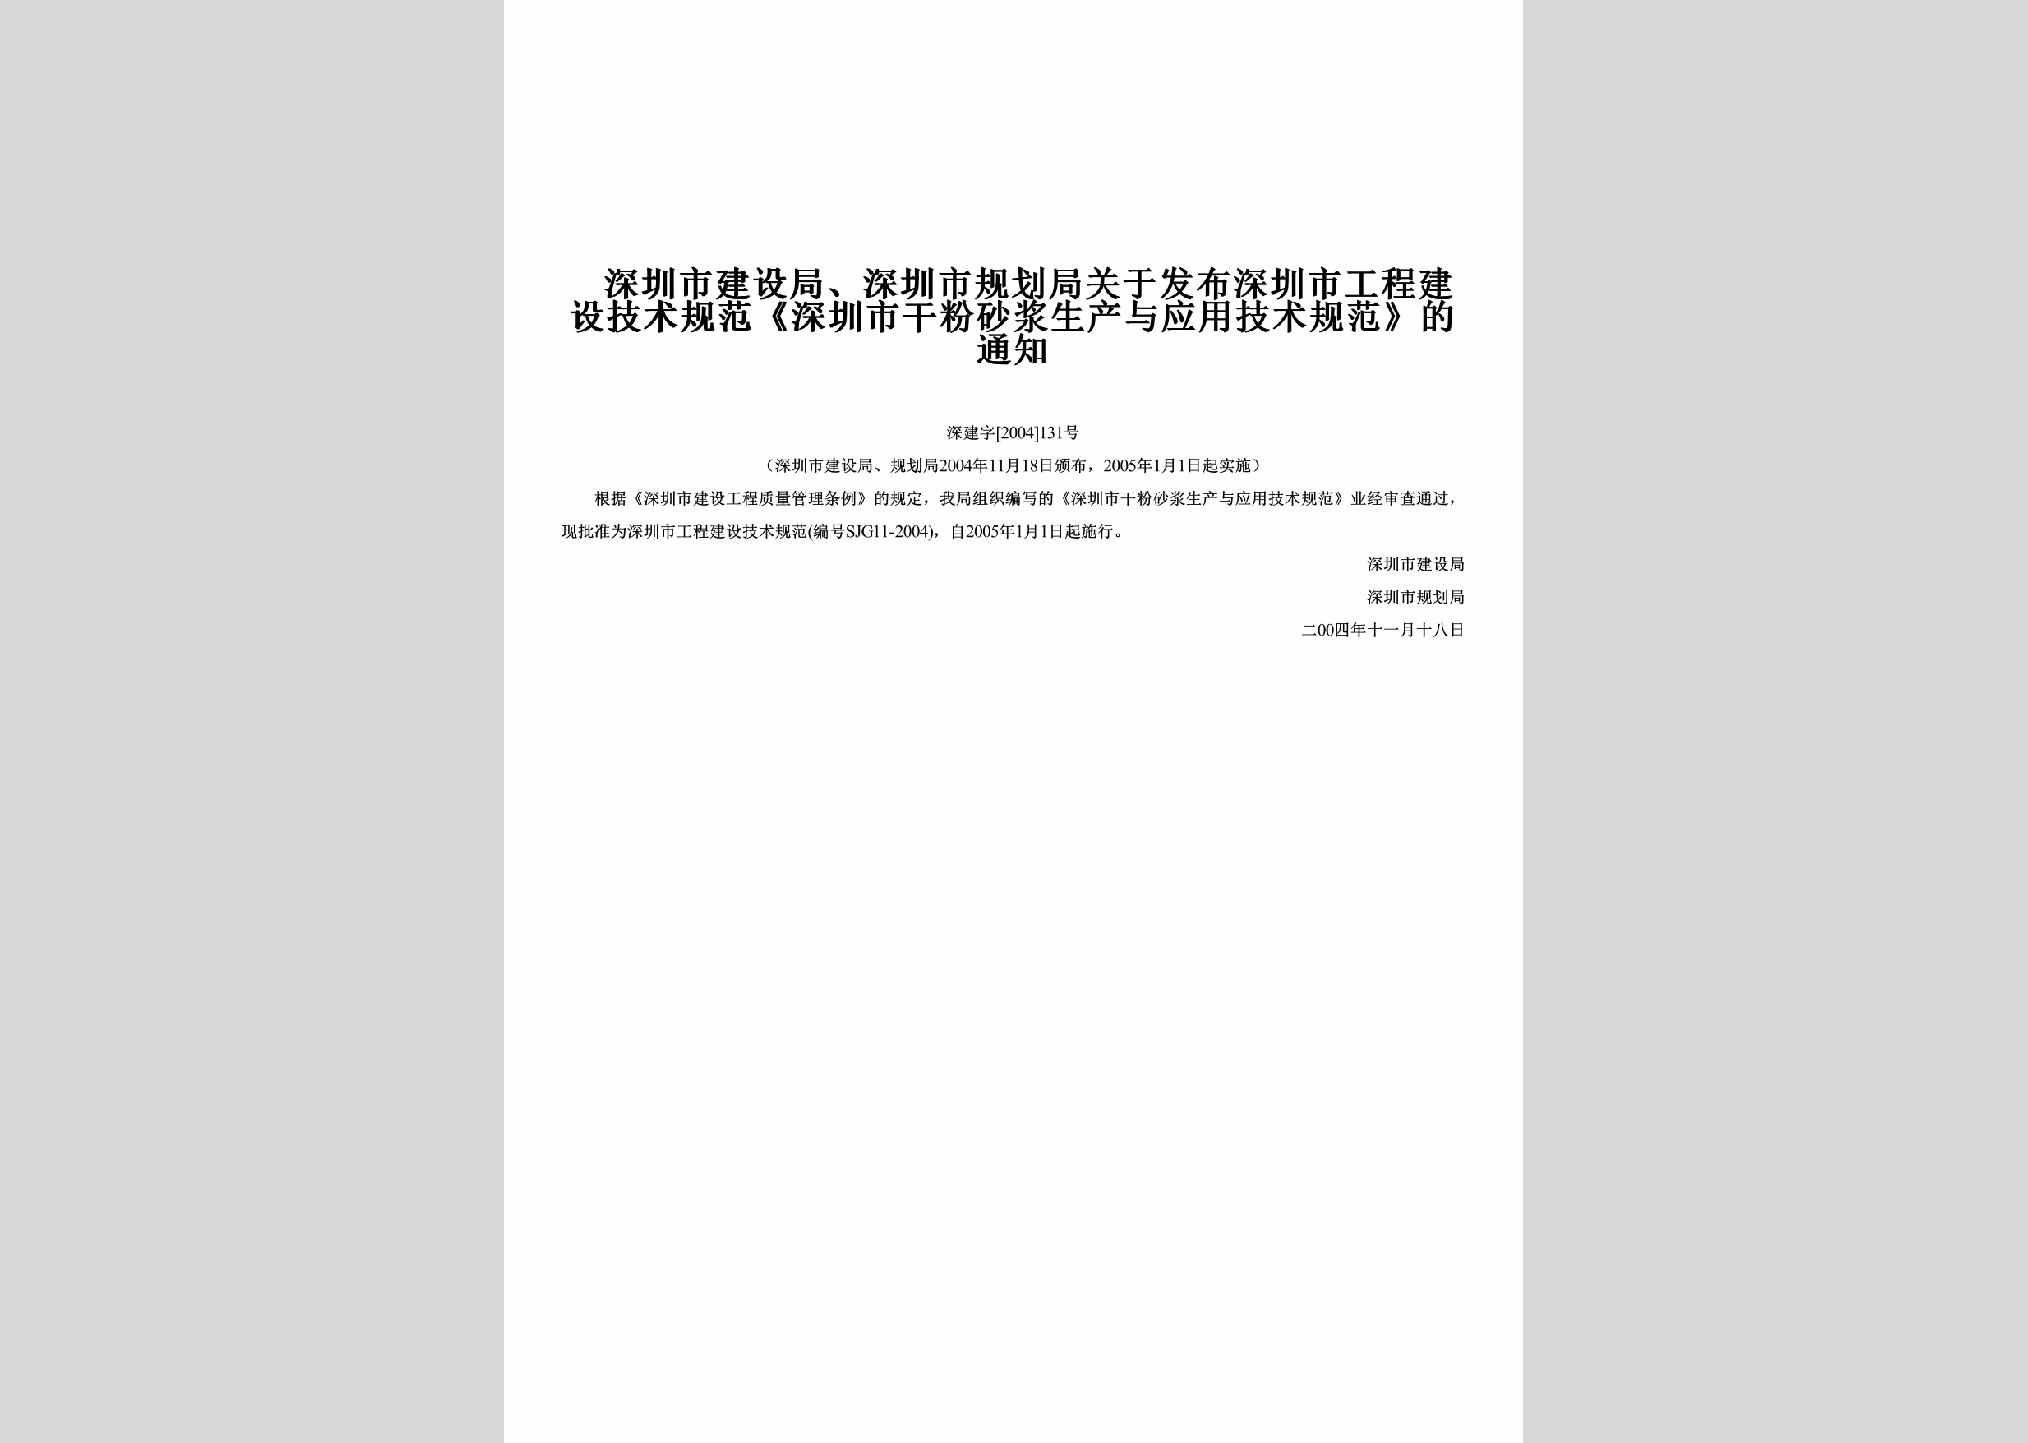 深建字[2004]131号：关于发布深圳市工程建设技术规范《深圳市干粉砂浆生产与应用技术规范》的通知